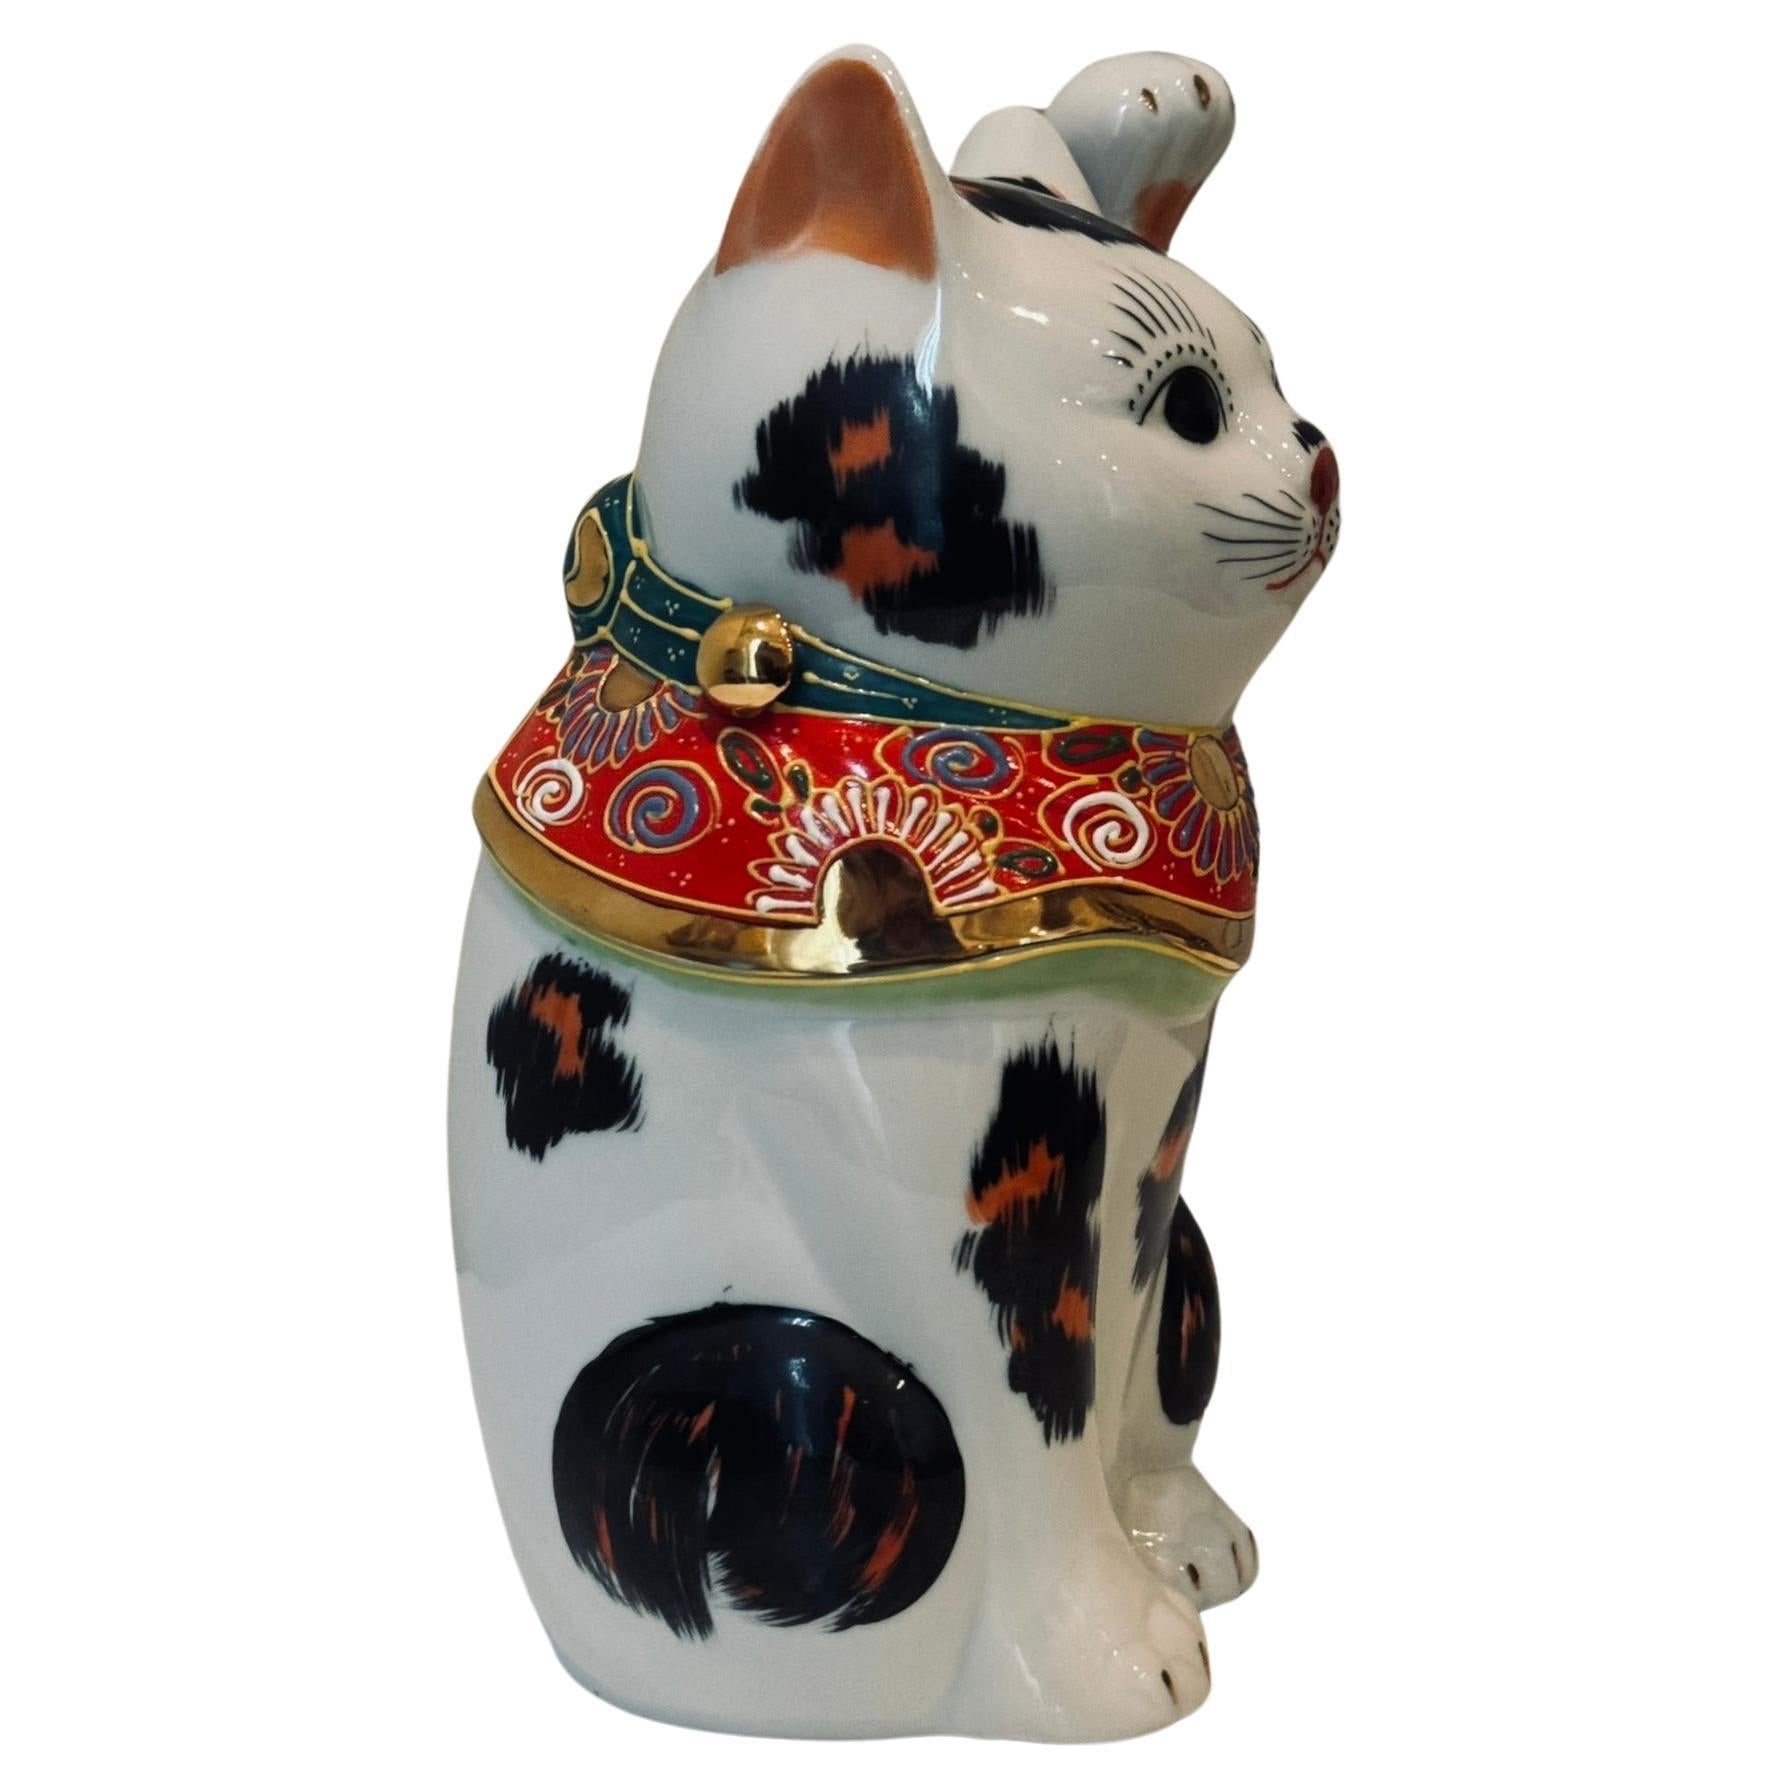 Die charmante, winkende Katze mit erhobener linker Pfote ist ein vergoldetes und handbemaltes Porzellanstück aus der Region Kutani in Japan.
Winkende Katzen gibt es in zwei Varianten. Die häufiger anzutreffende rechtshändige winkende Katze (mit